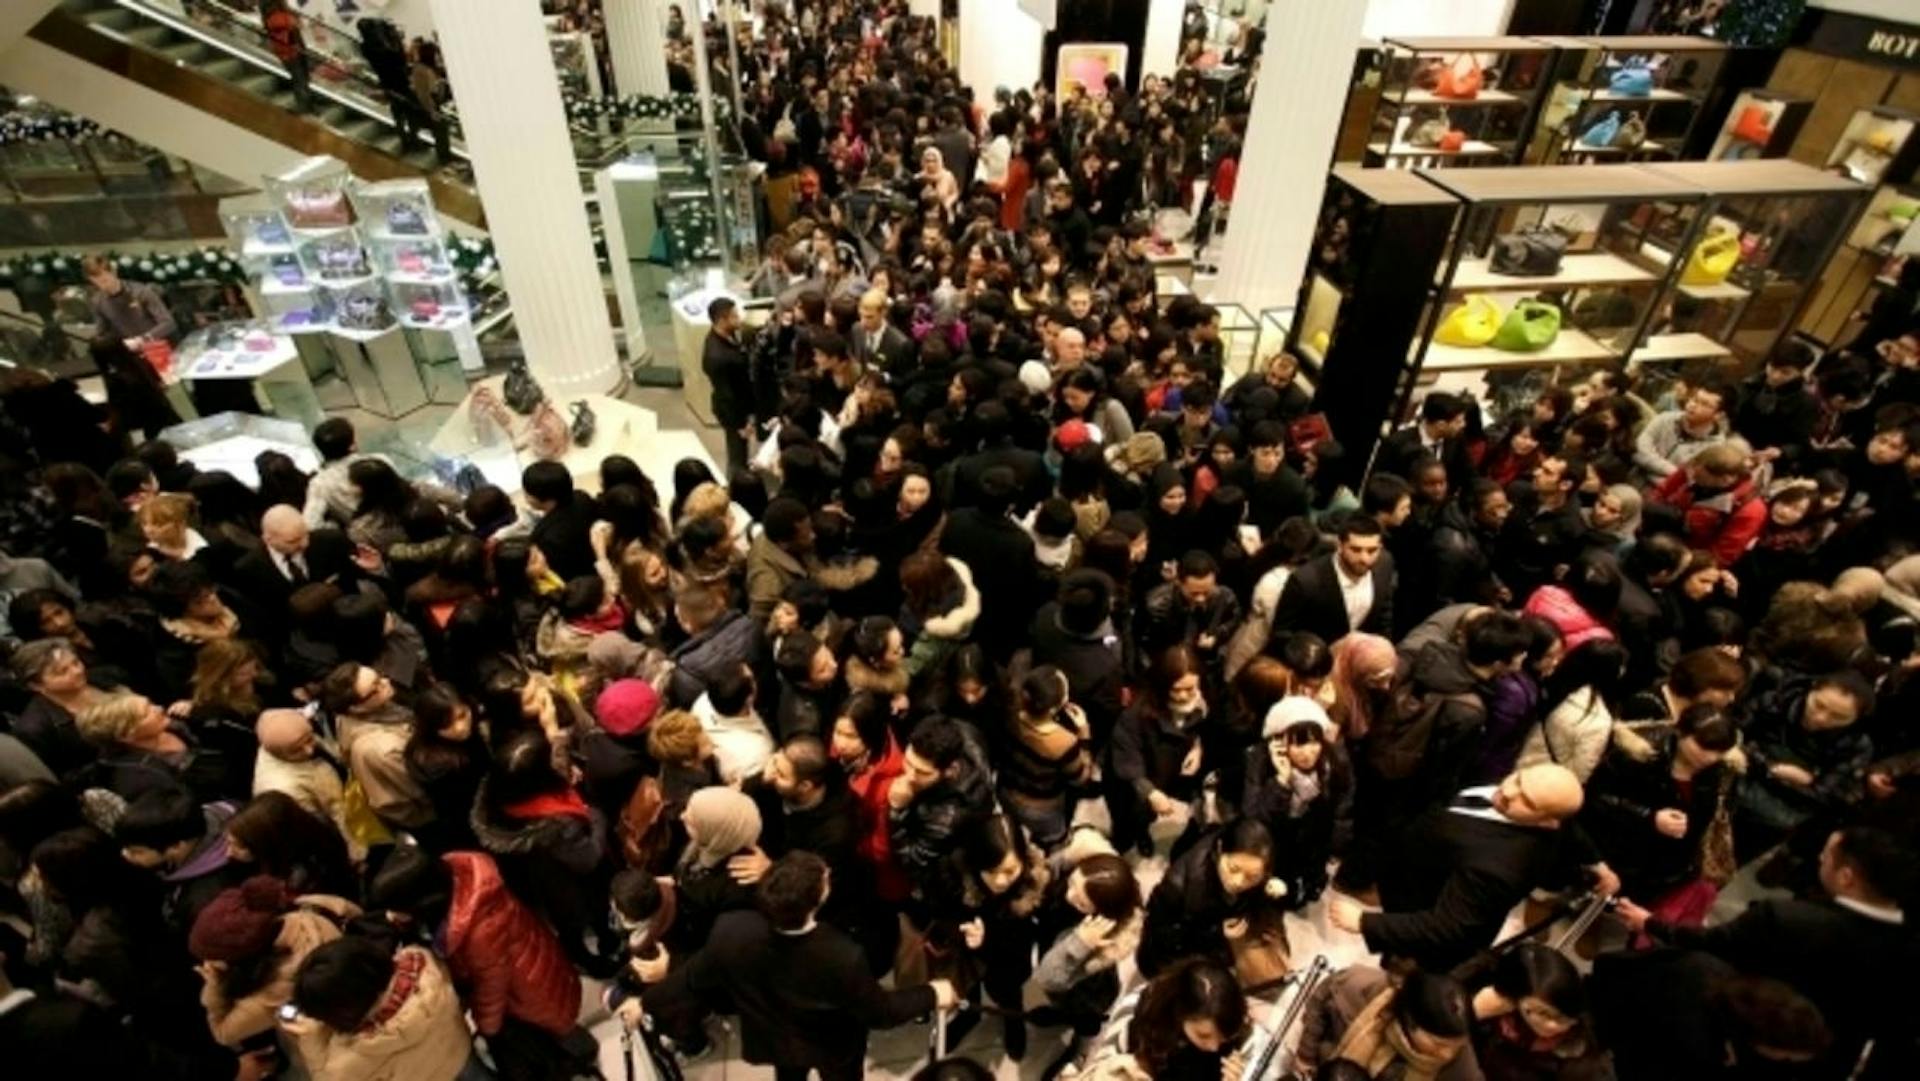 Толпа эскортниц. Толпа людей в магазине. Толпа в торговом центре. Толпы народу в магазине. Очередь в магазине.